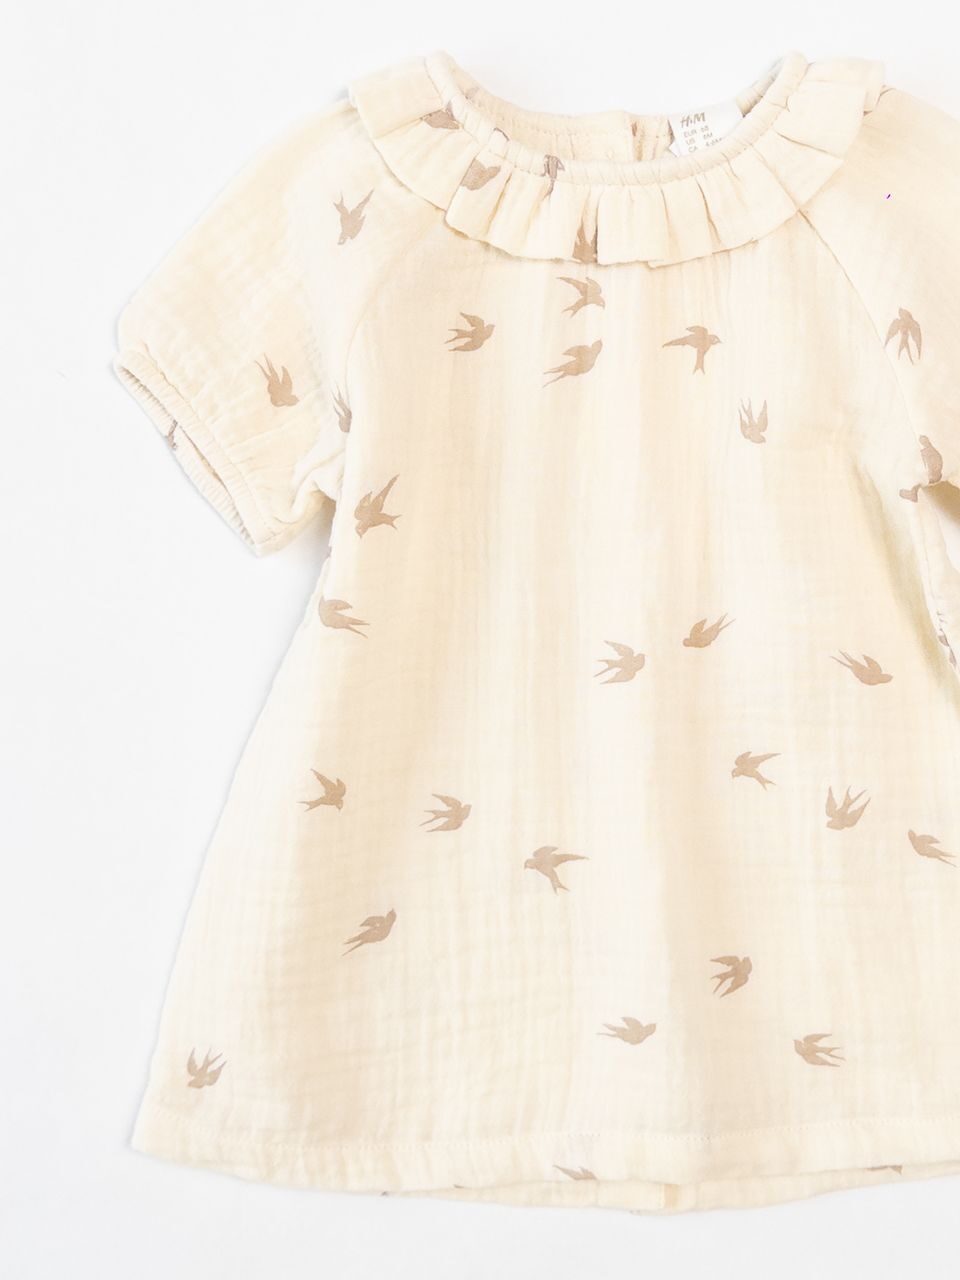 Платье муслиновое для девочки сзади на пуговице цвет молочный принт птички рост 68 см H&M